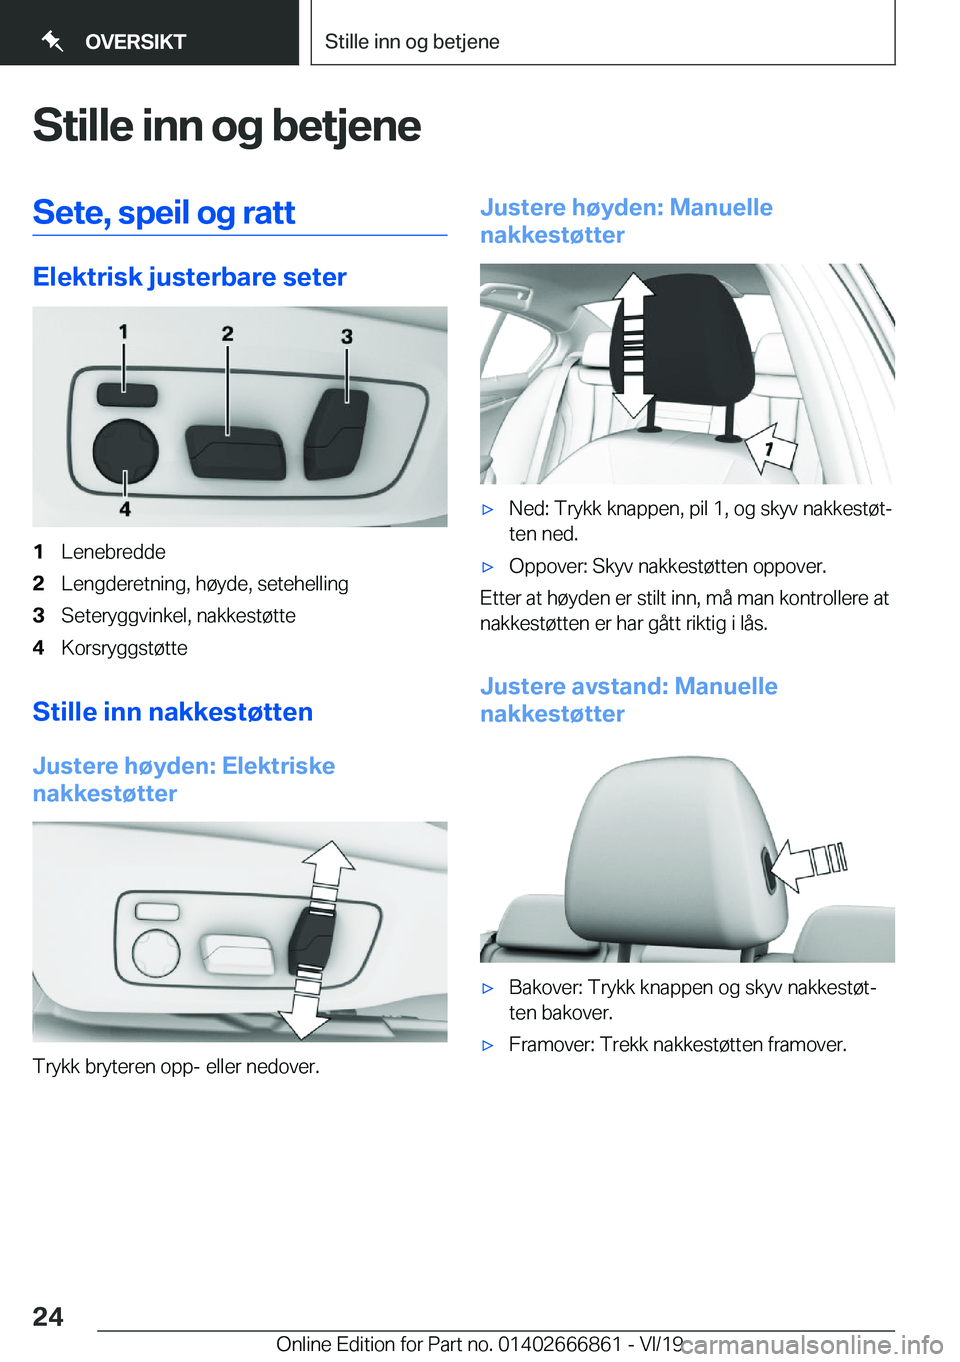 BMW X3 M 2020  InstruksjonsbØker (in Norwegian) �S�t�i�l�l�e��i�n�n��o�g��b�e�t�j�e�n�e�S�e�t�e�,��s�p�e�i�l��o�g��r�a�t�t
�E�l�e�k�t�r�i�s�k��j�u�s�t�e�r�b�a�r�e��s�e�t�e�r
�1�L�e�n�e�b�r�e�d�d�e�2�L�e�n�g�d�e�r�e�t�n�i�n�g�,��h�